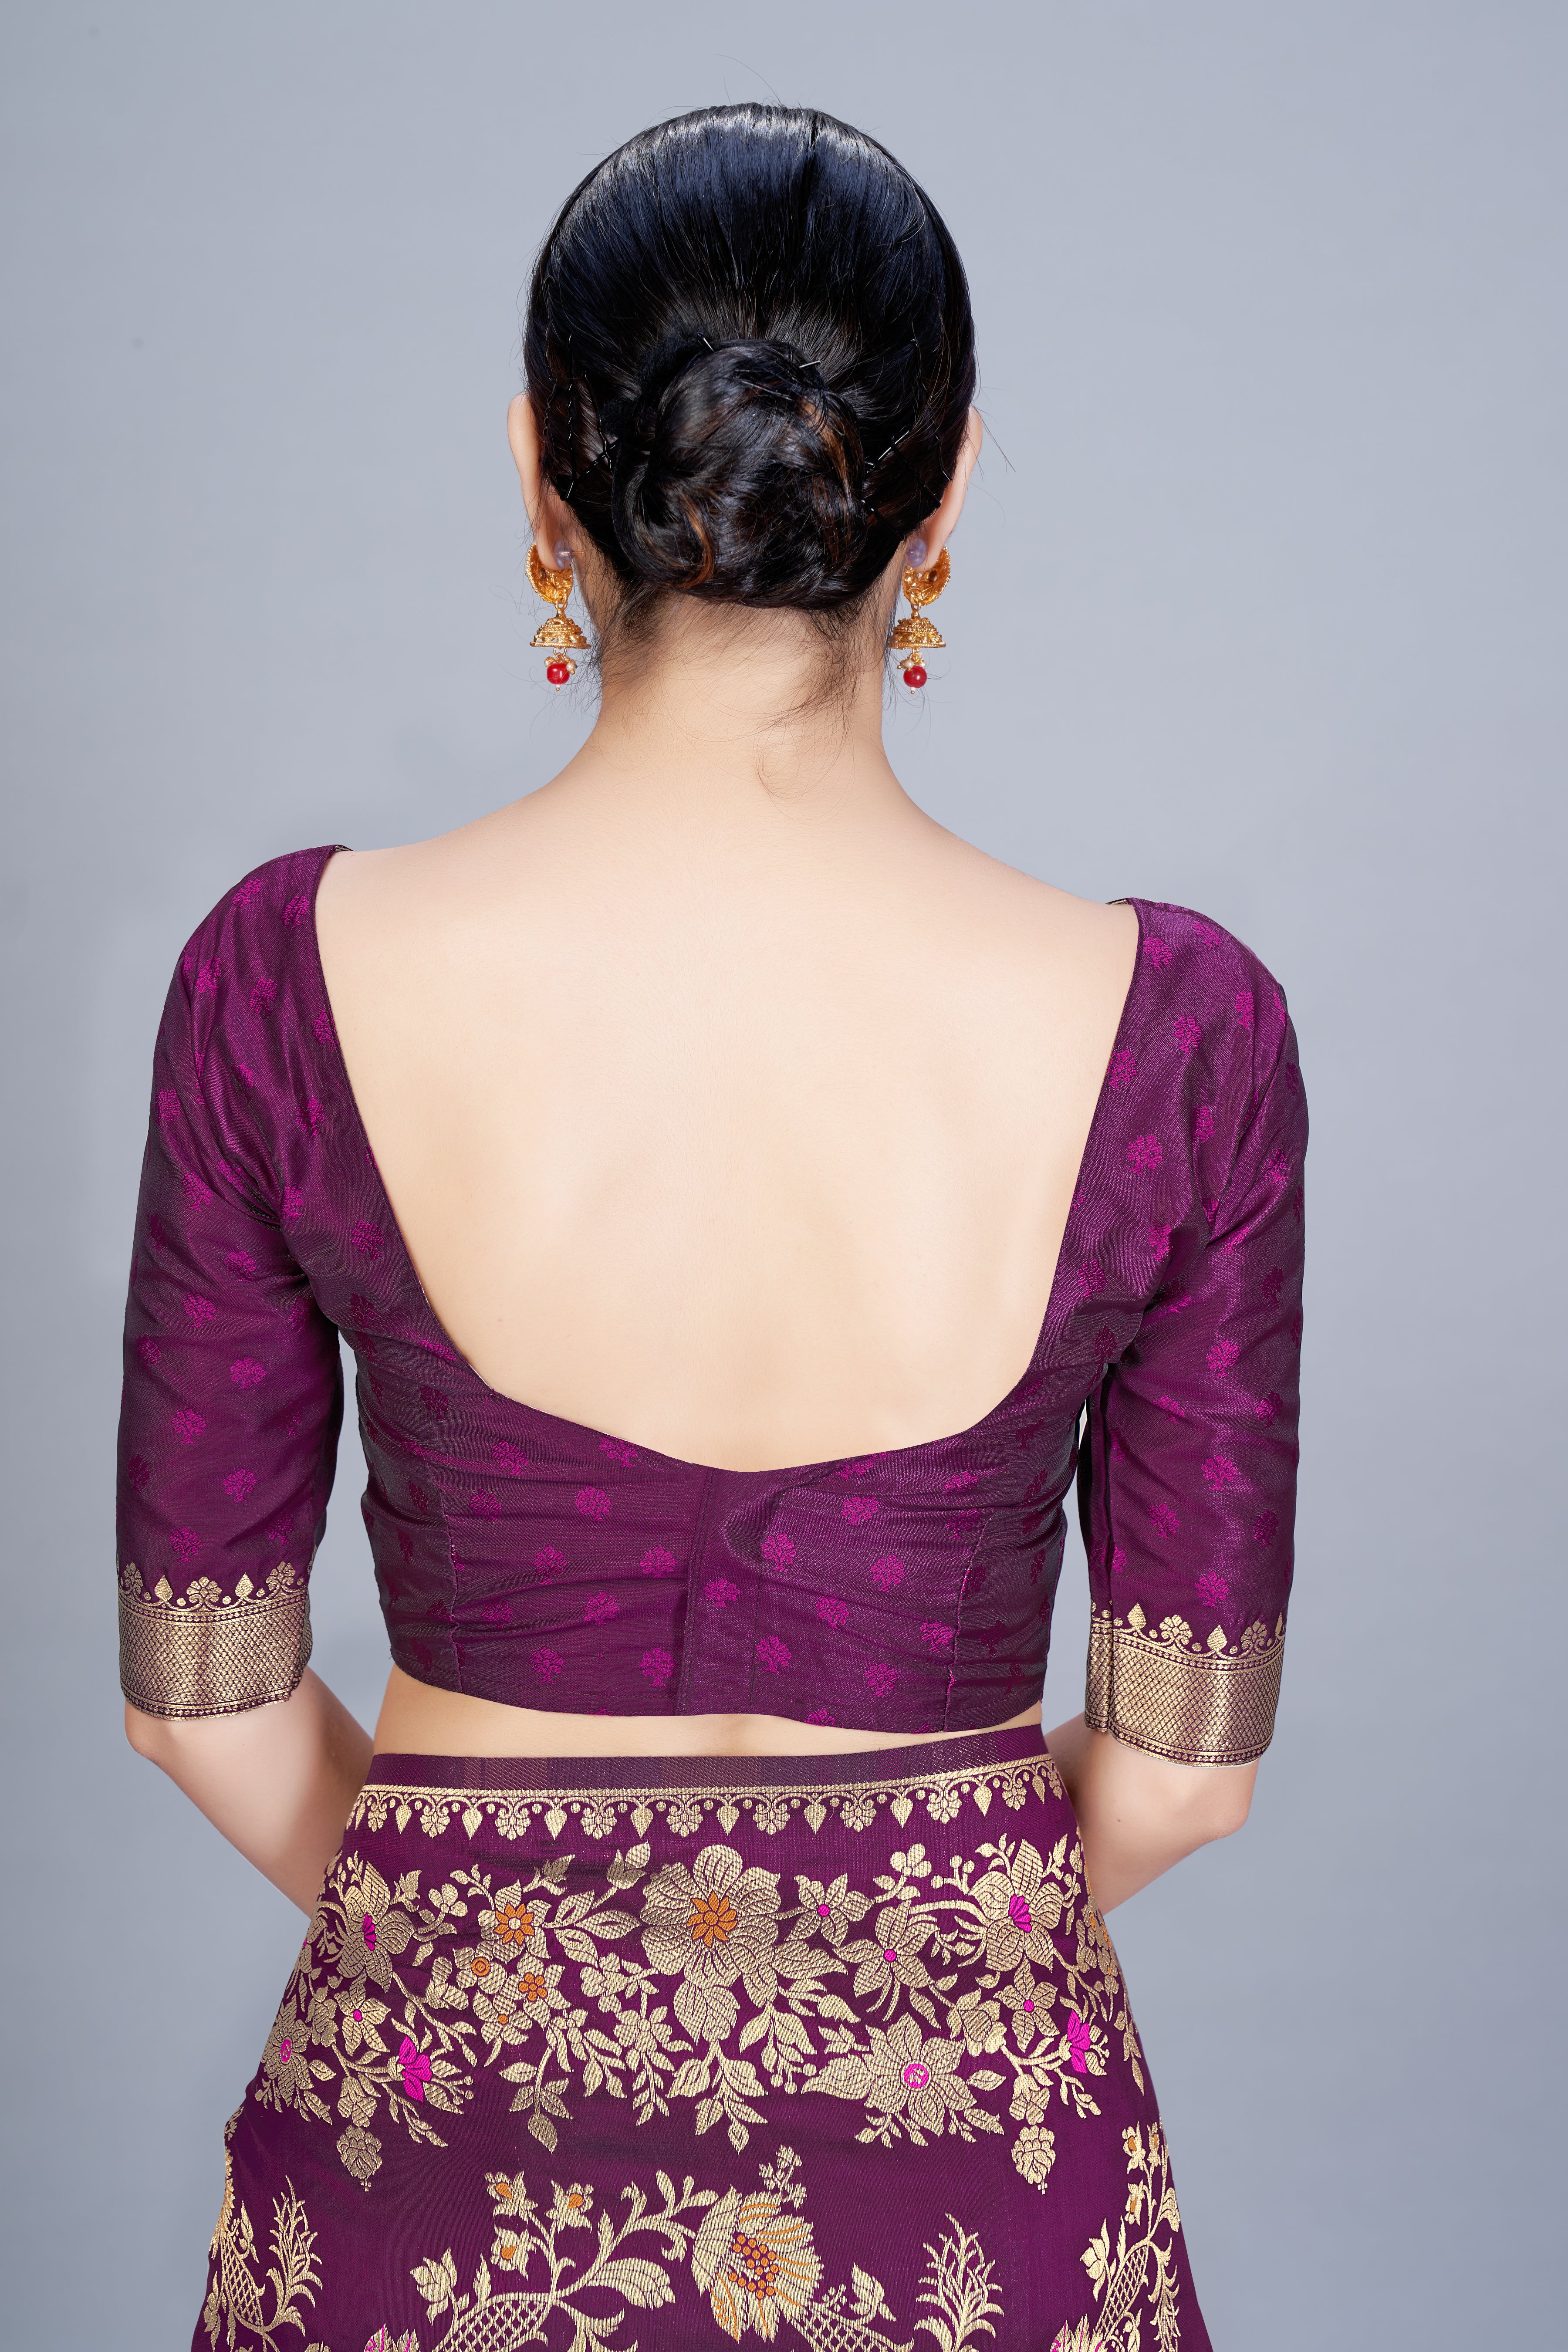 Women's Wine Color Banarasi silk Woven Saree - Monjolika